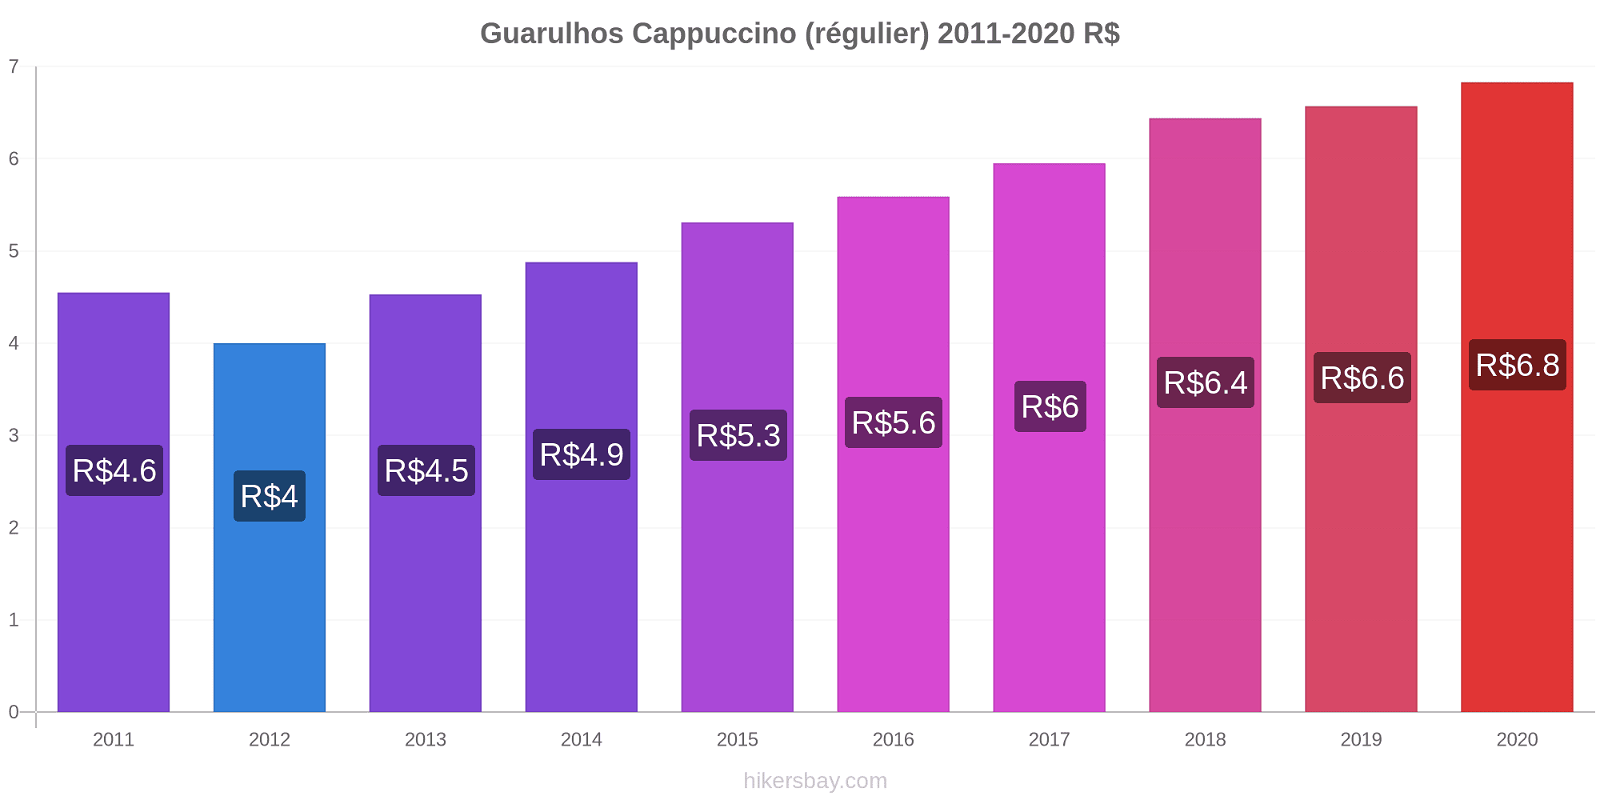 Guarulhos changements de prix Cappuccino (régulier) hikersbay.com